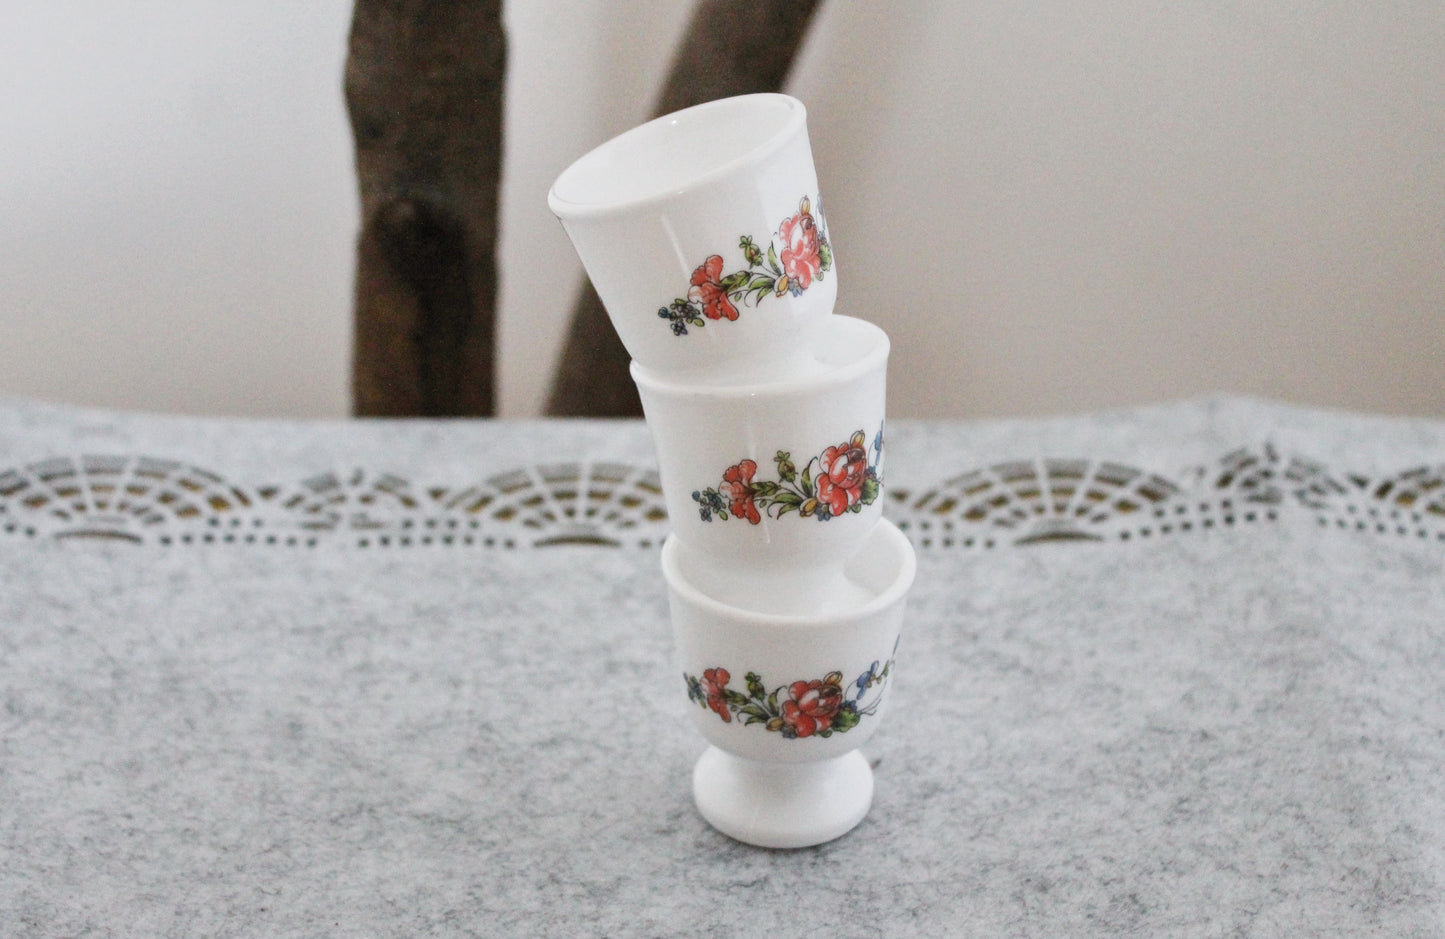 Set of three Vintage porcelain egg holders - 2.3 inches - Vintage France ceramic egg stand - 1980s